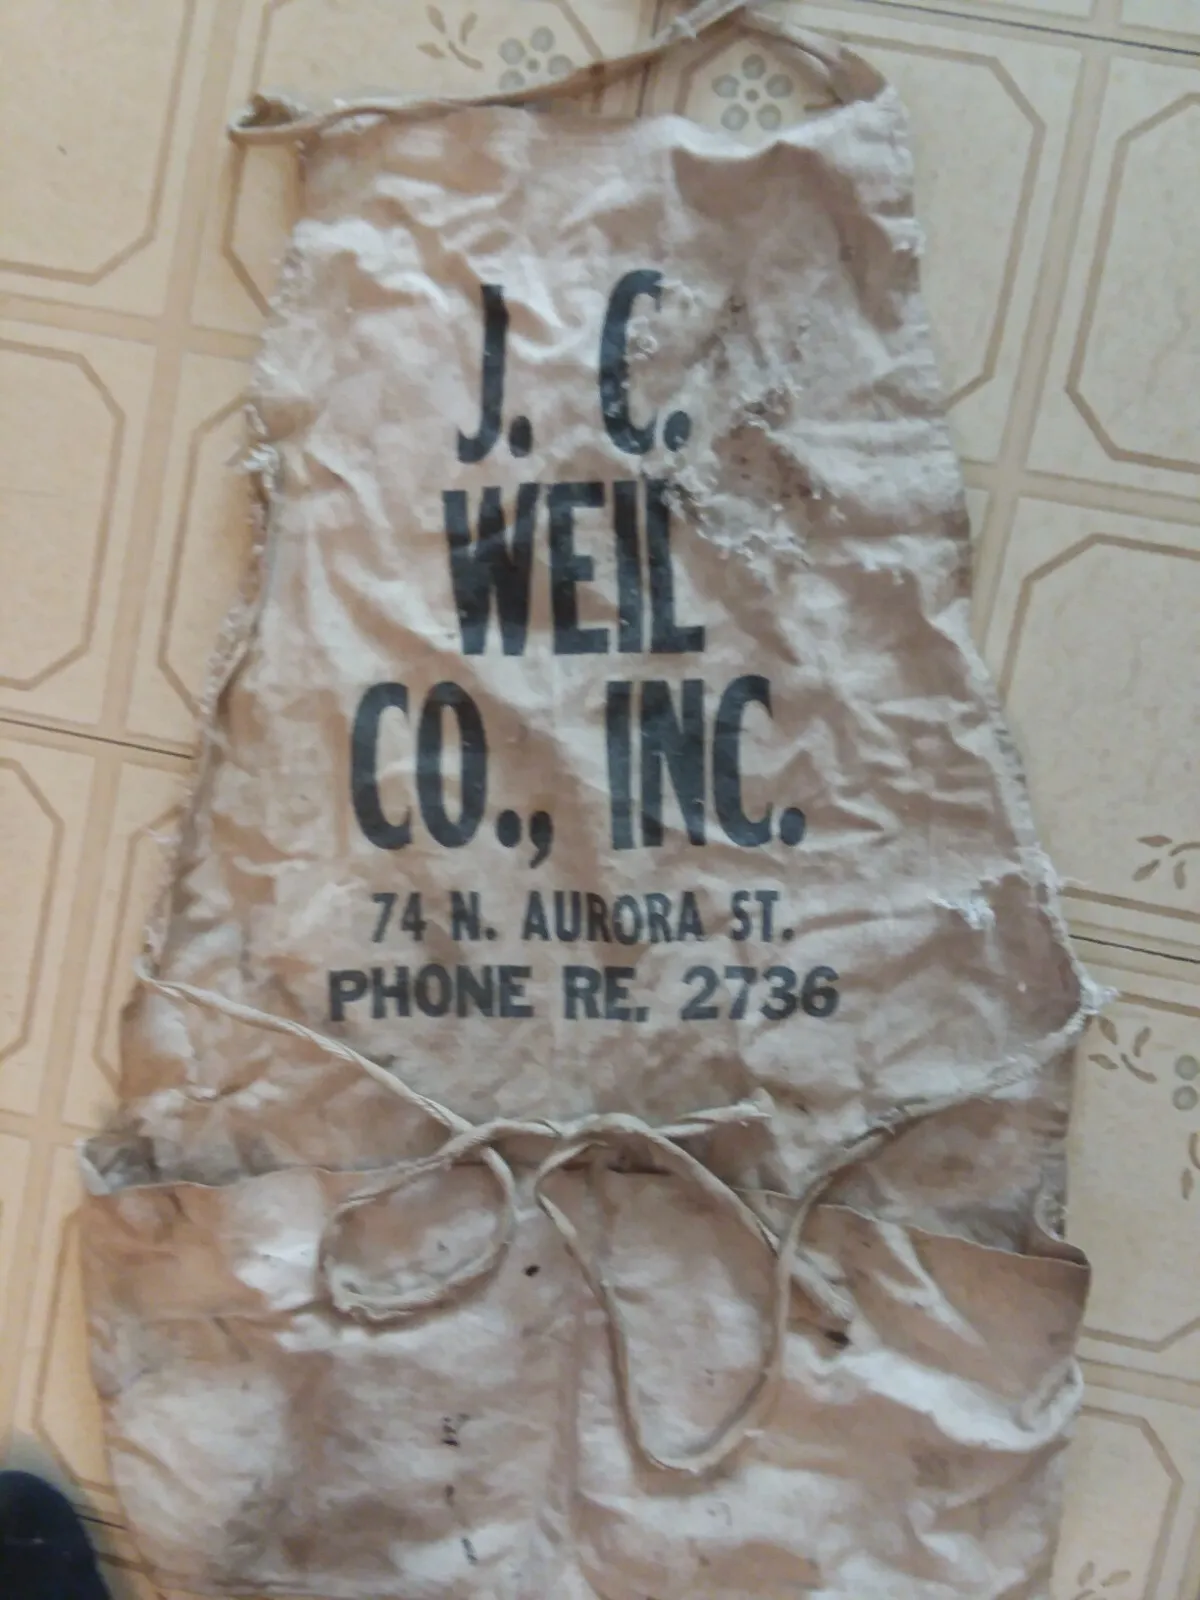 Vintage nail pouch apron J.C.WEIL CO.